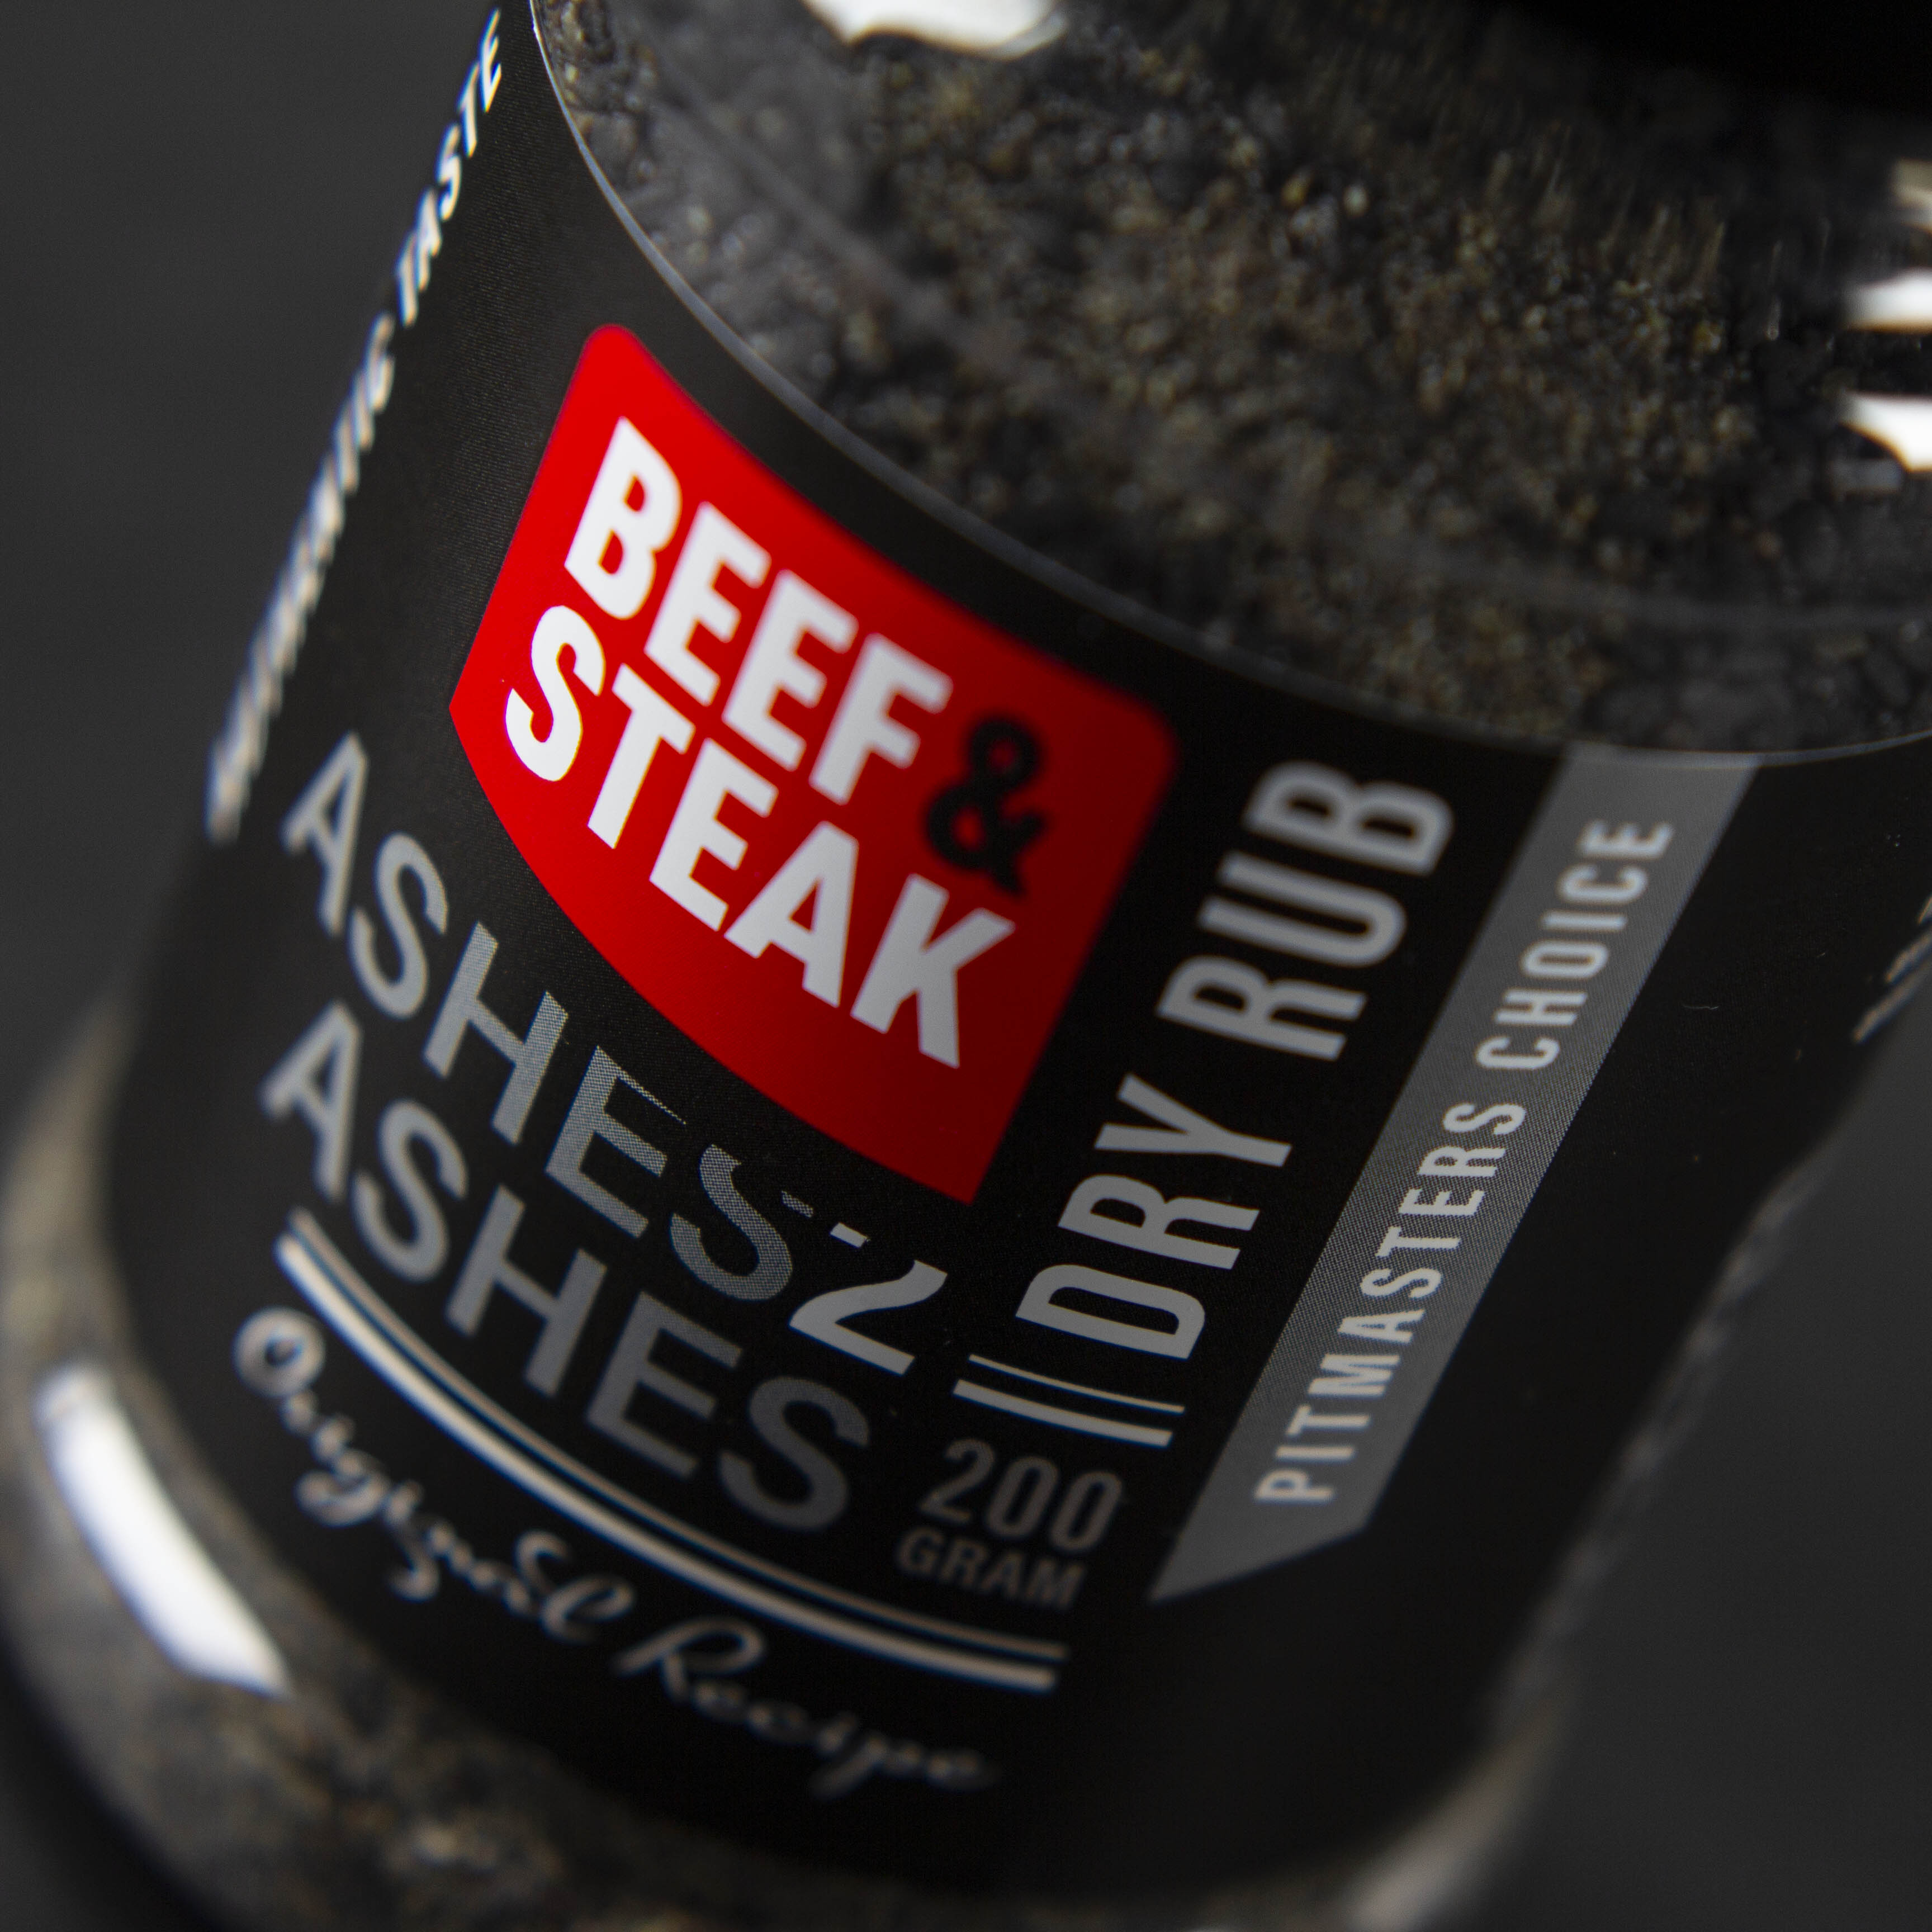 Packaging Design: Beef & Steak